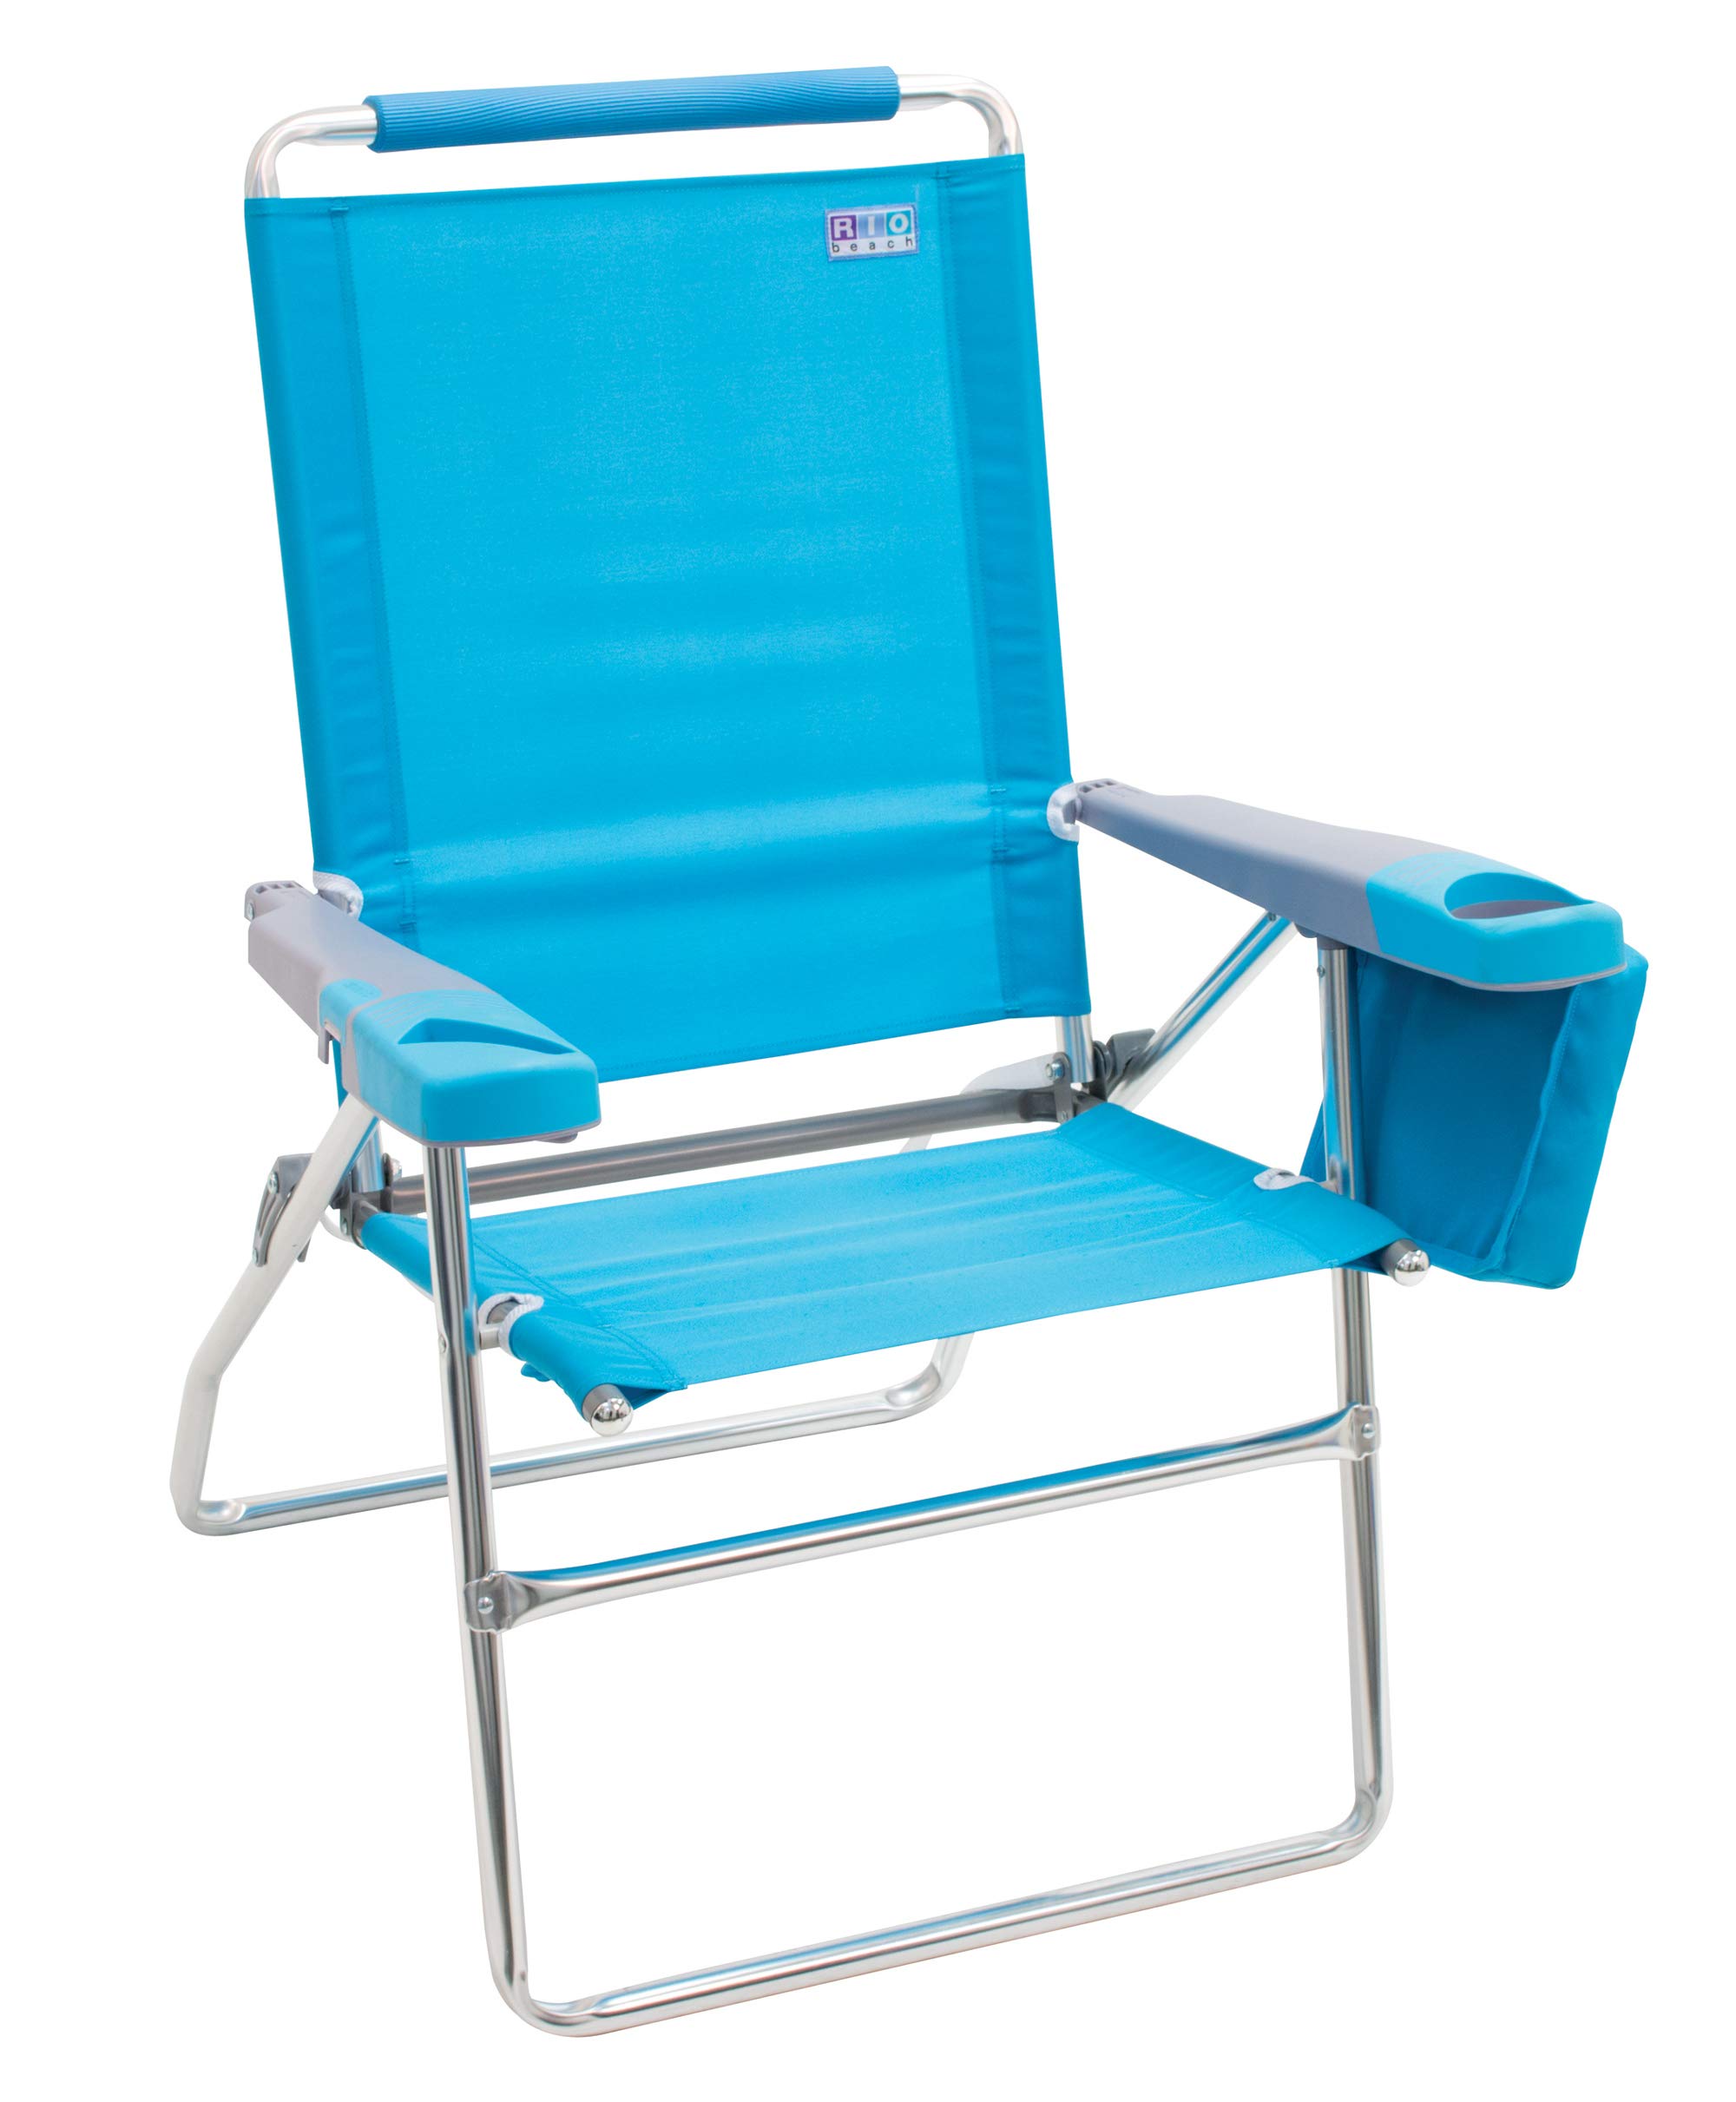 Rio Beach 17" Extended Height 4-Position Folding Beach Chair